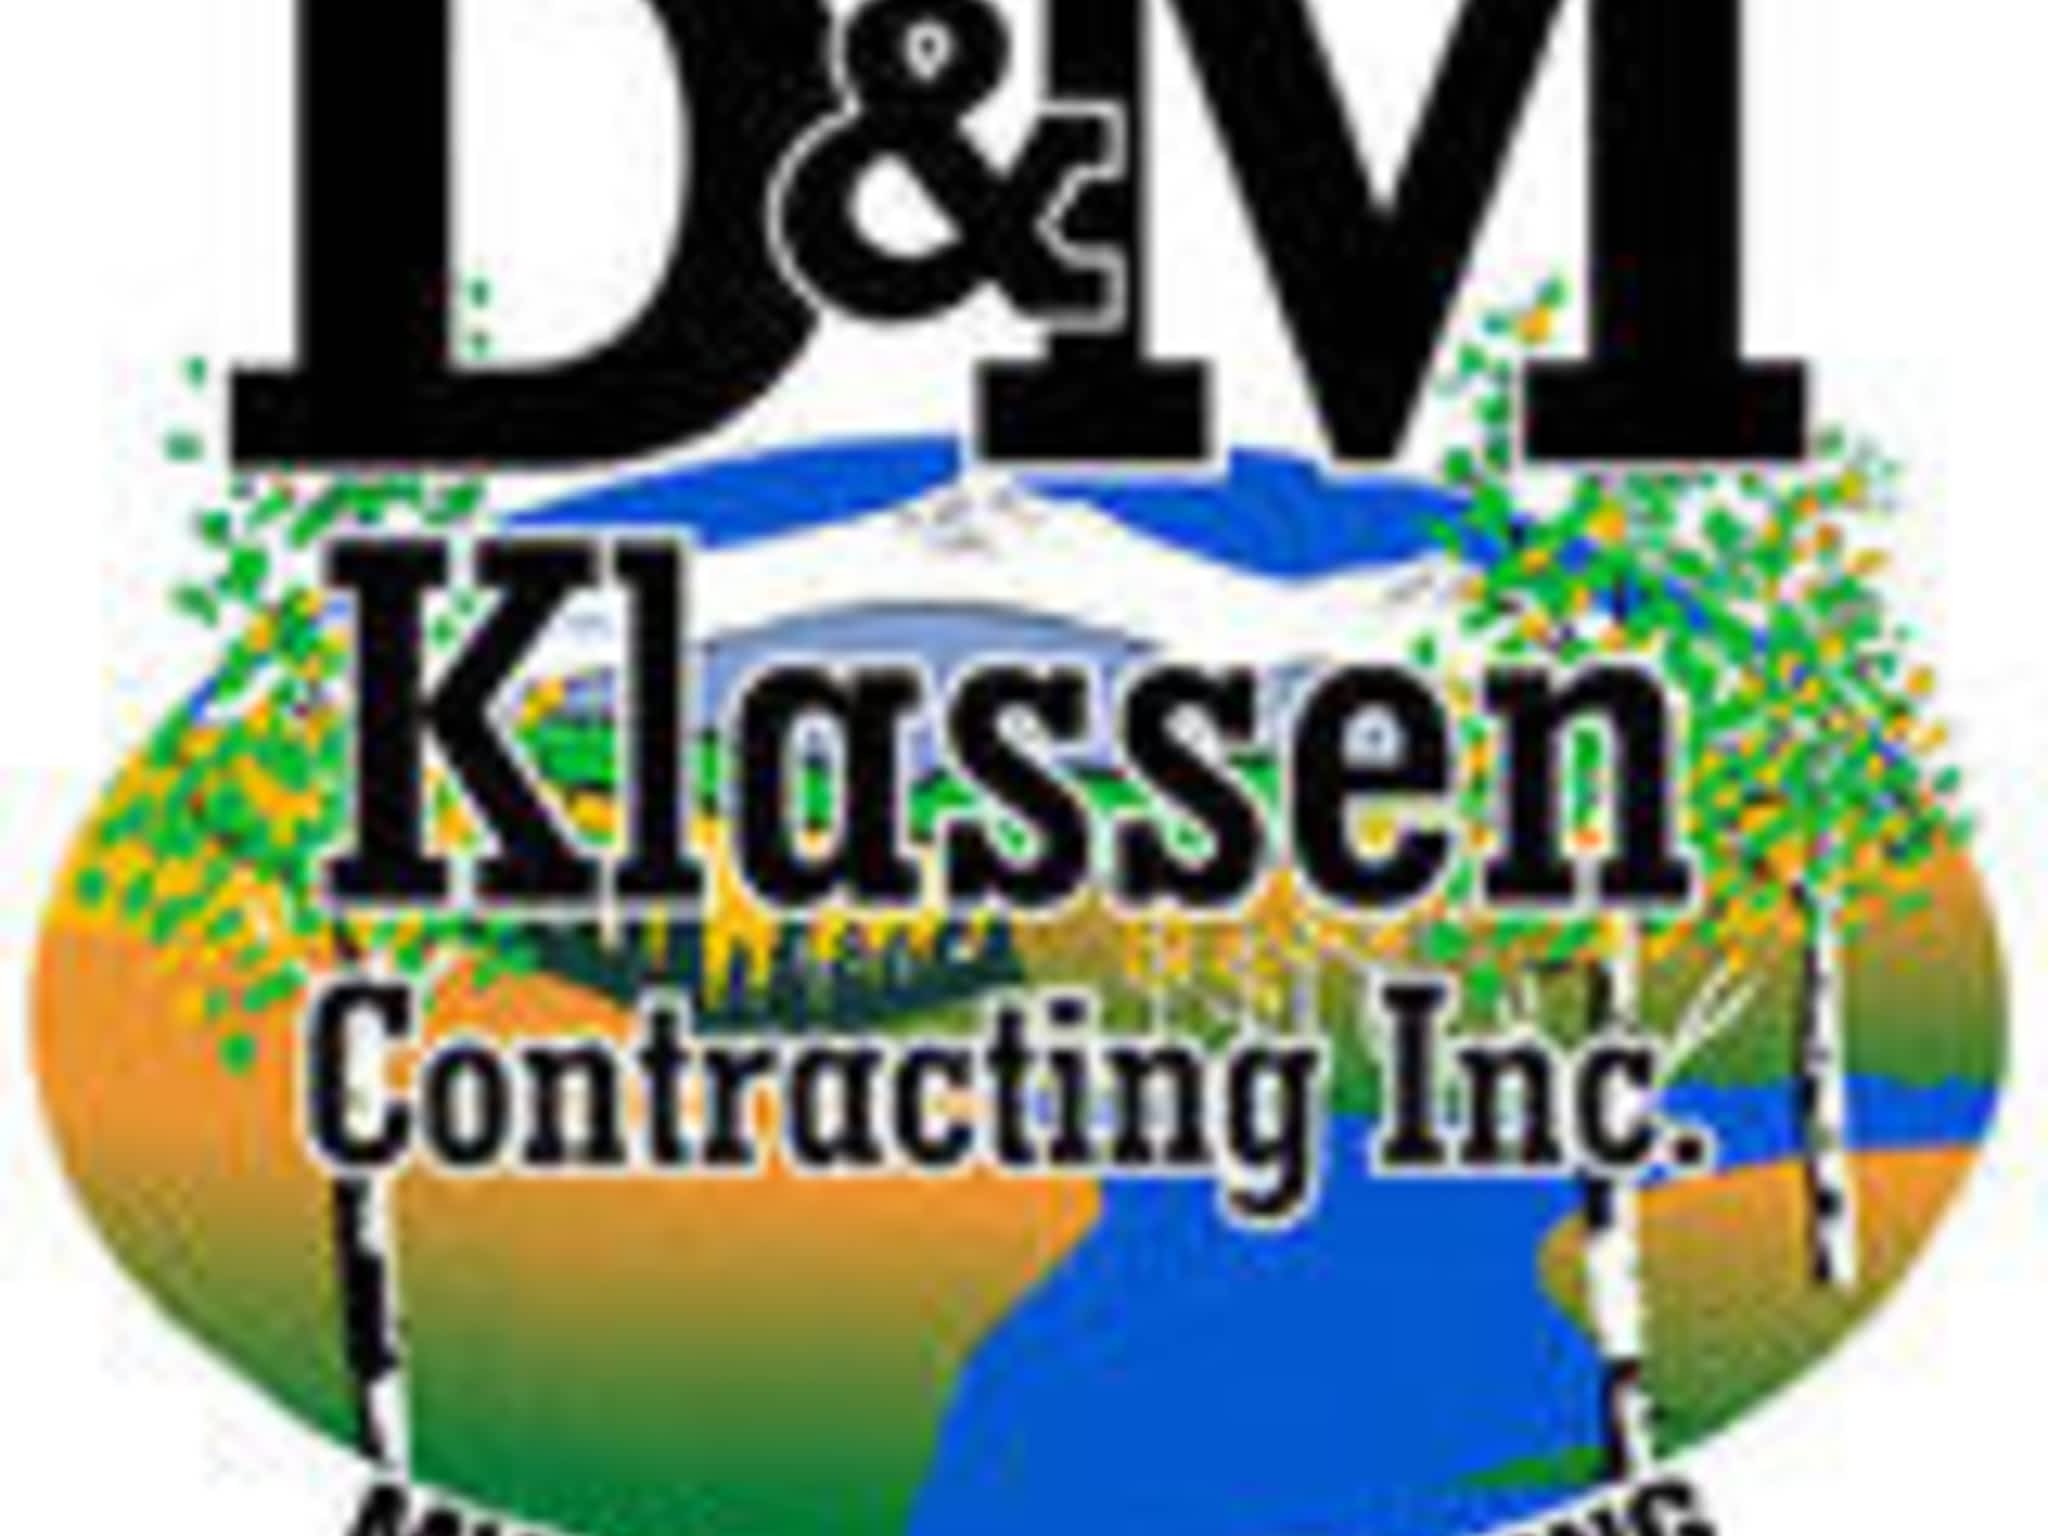 photo D & M Klassen Contracting Inc